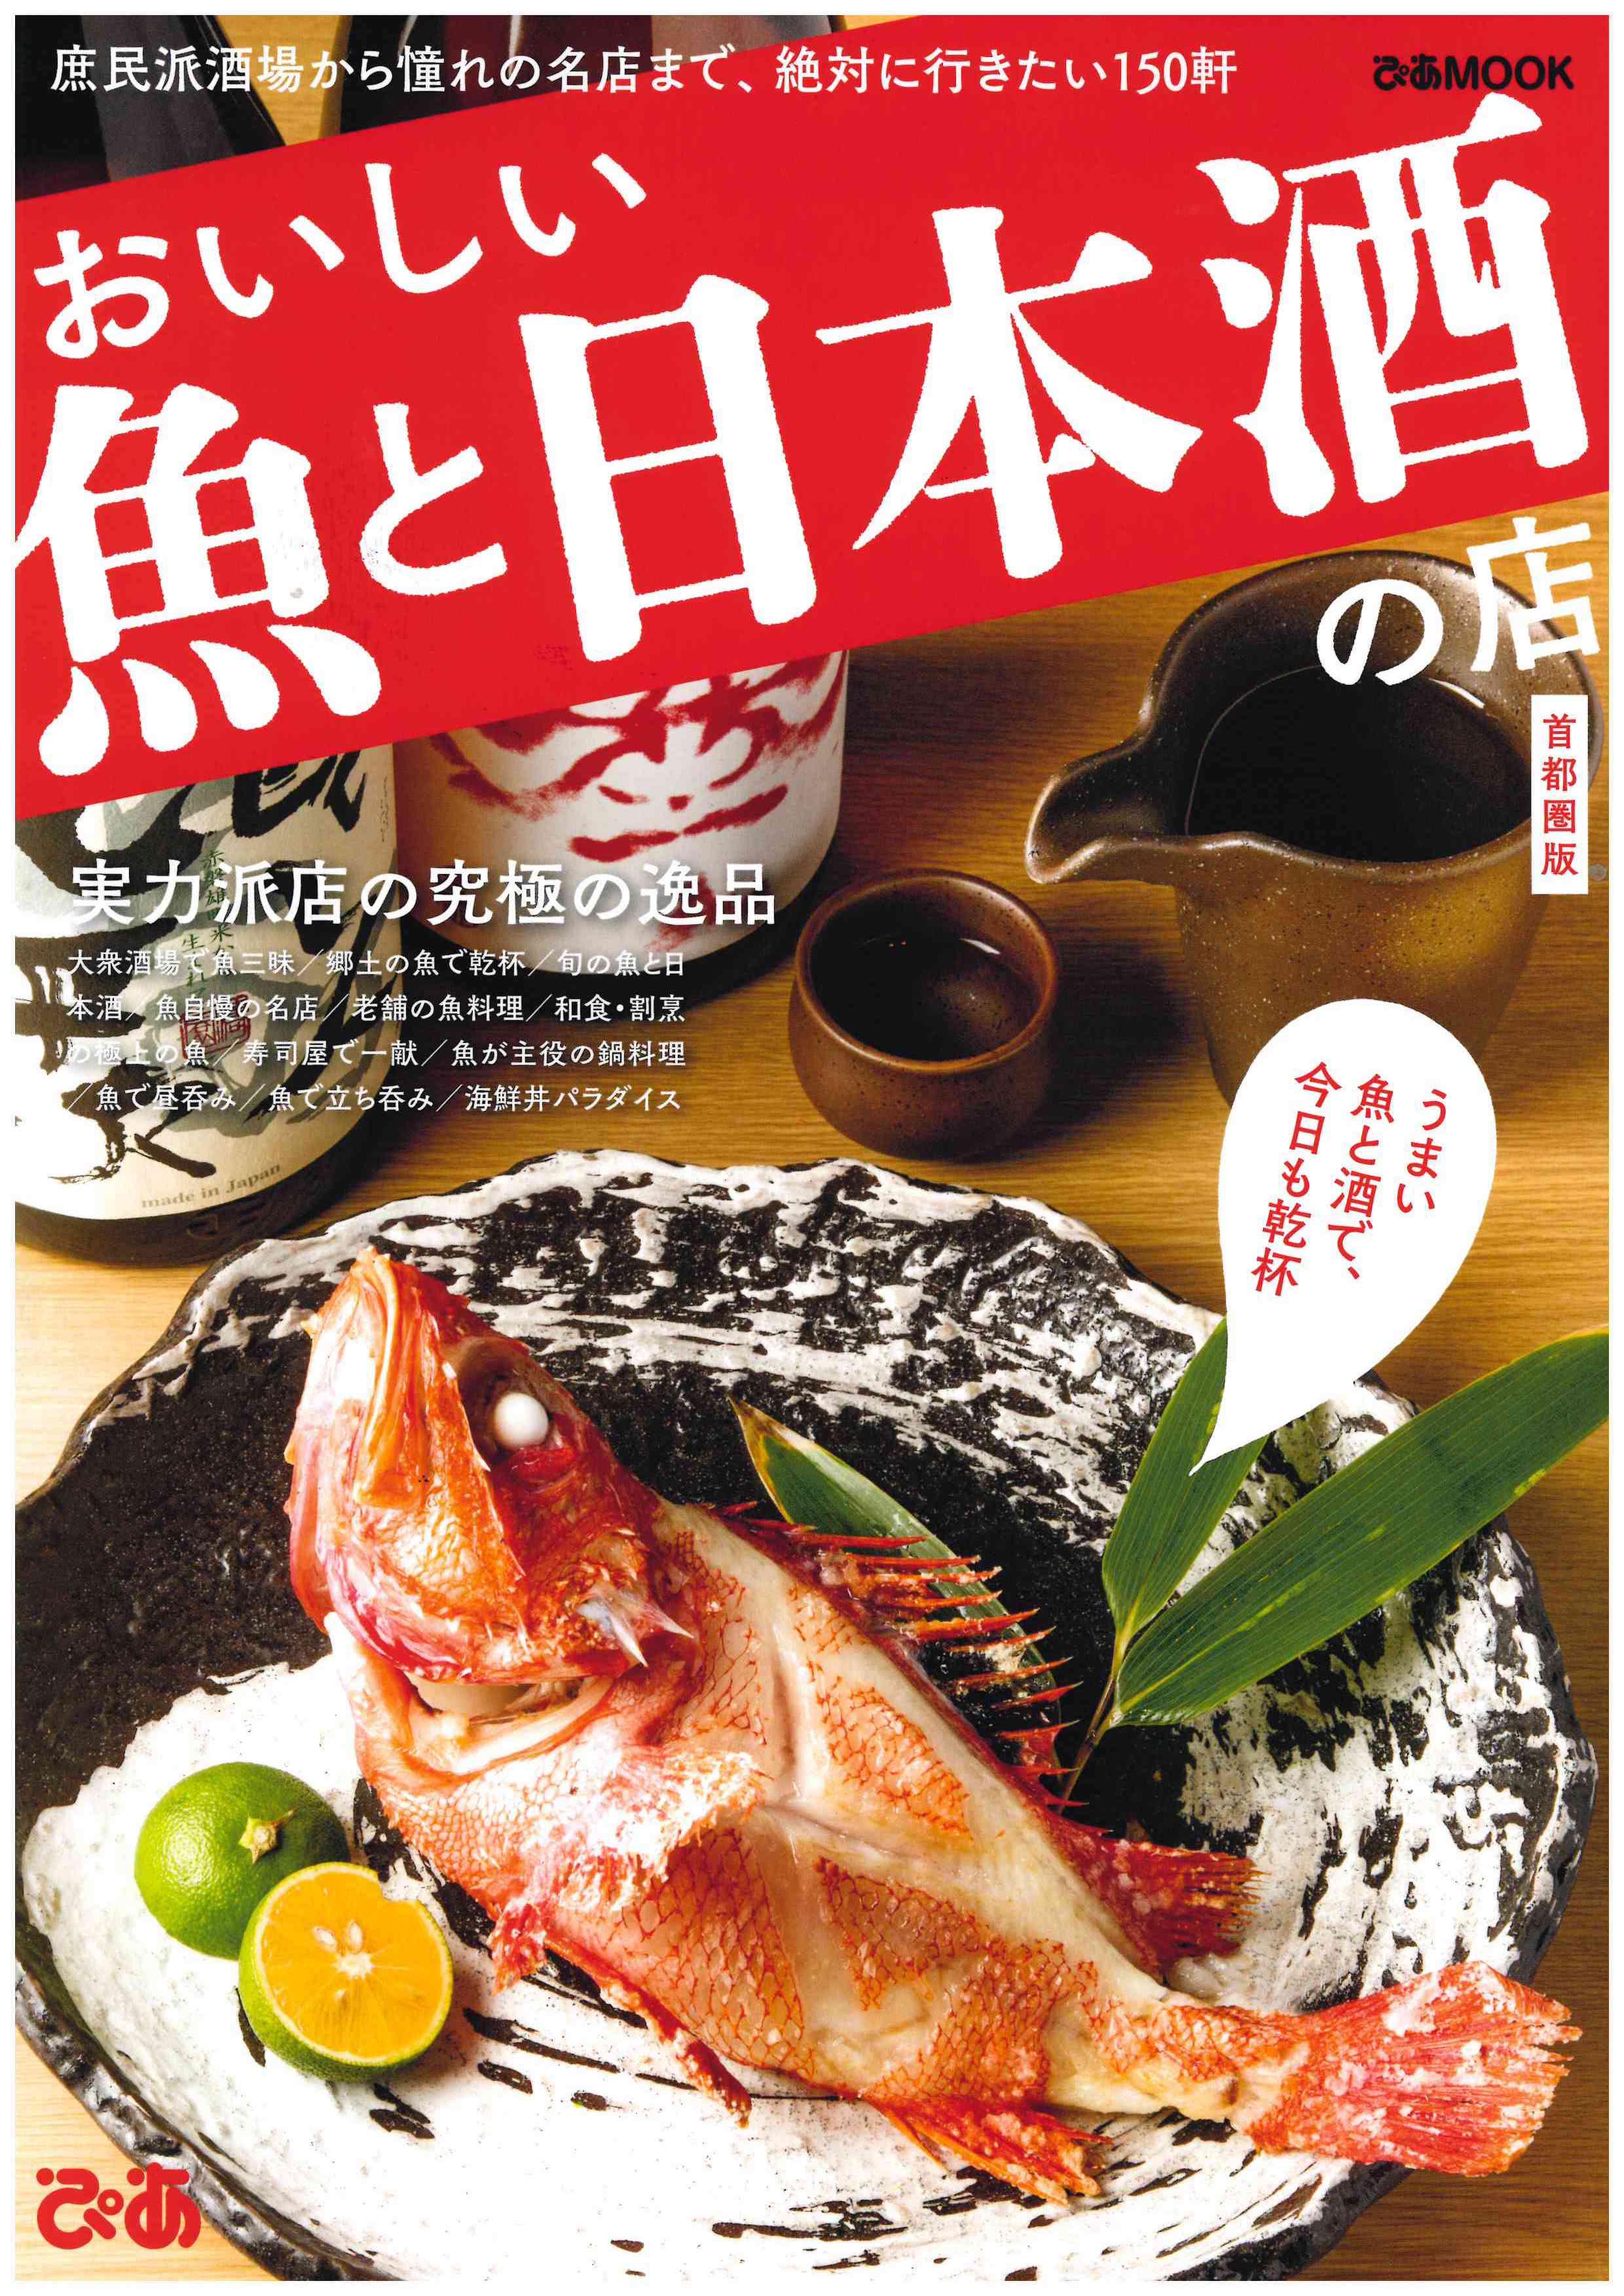 ぴあmook おいしい魚と日本酒の店 首都圏版 1月31日発売 に魚の飯新橋店が掲載され 表紙に起用されました 魚の飯 さかな のまんま 公式サイト